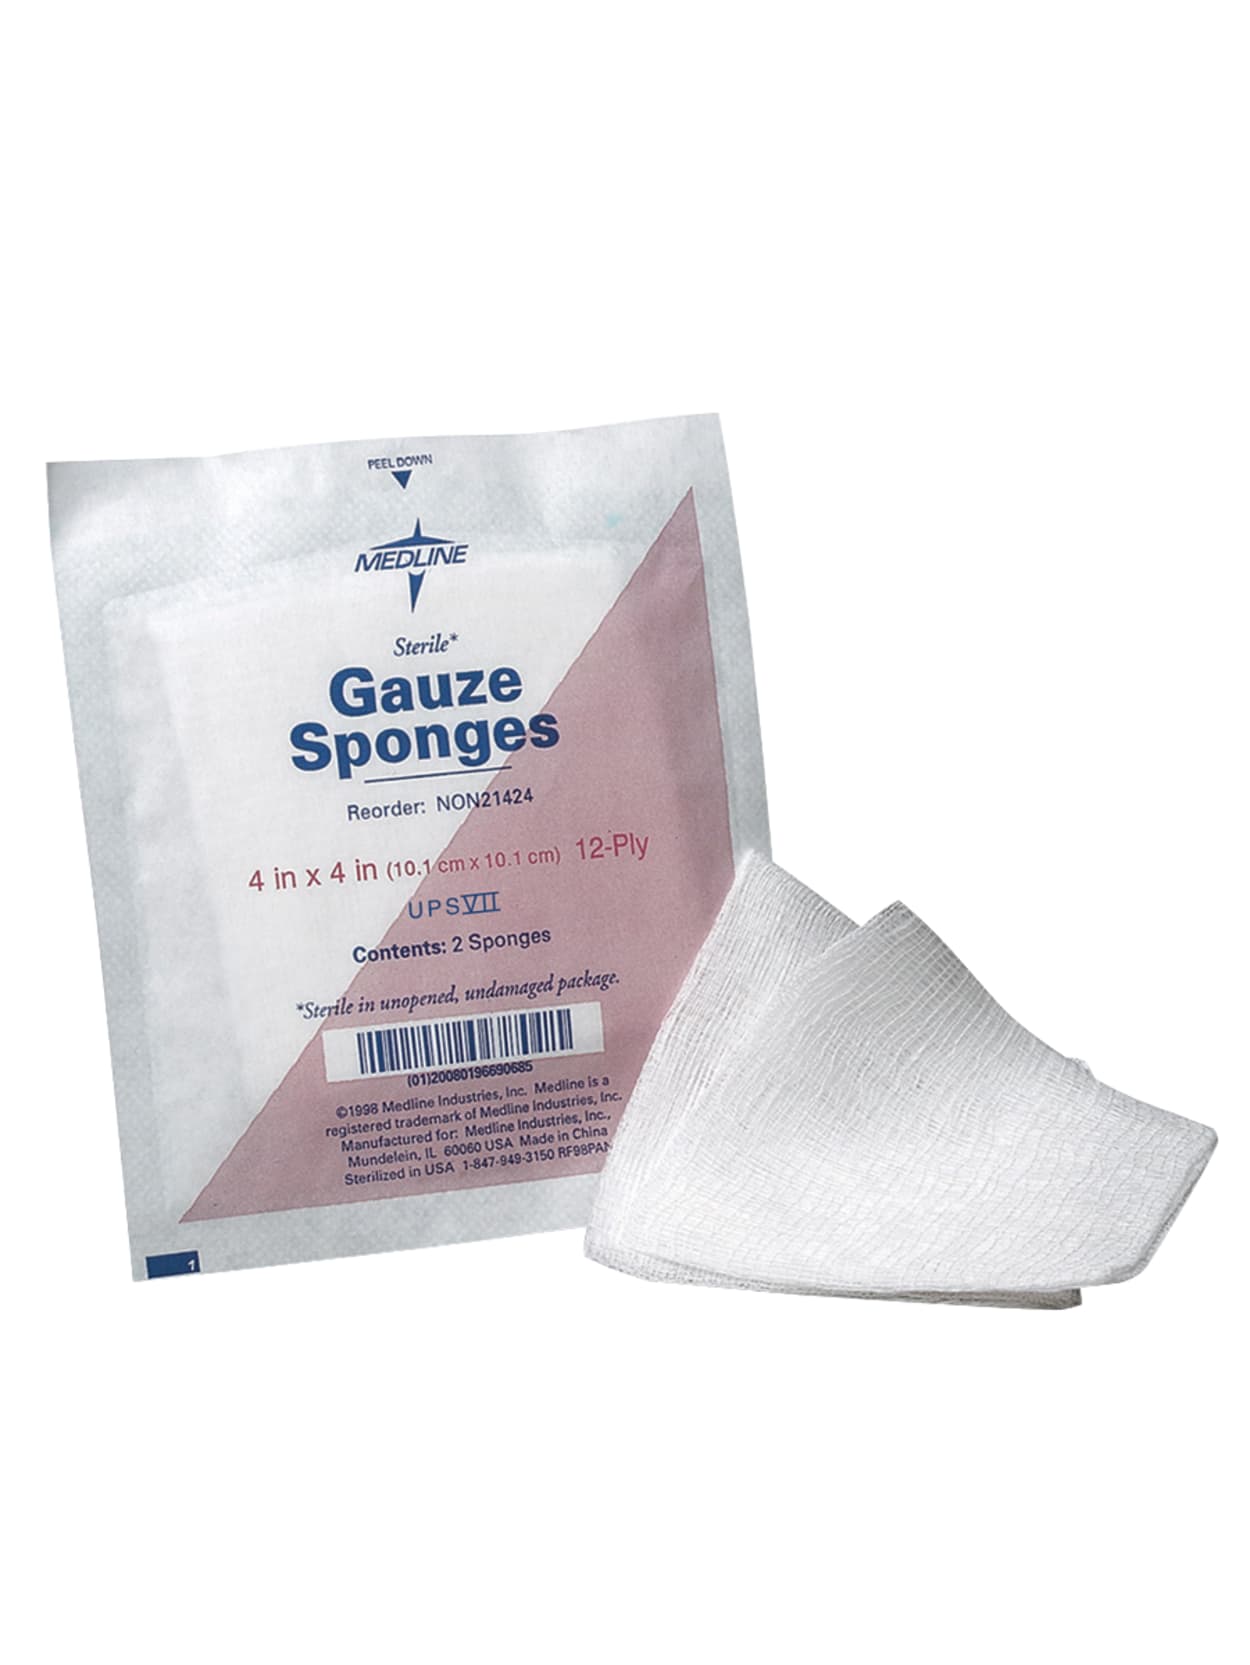 Medline Sterile Gauze Sponges 4 X 4 12 Ply Box Of 50 Office Depot